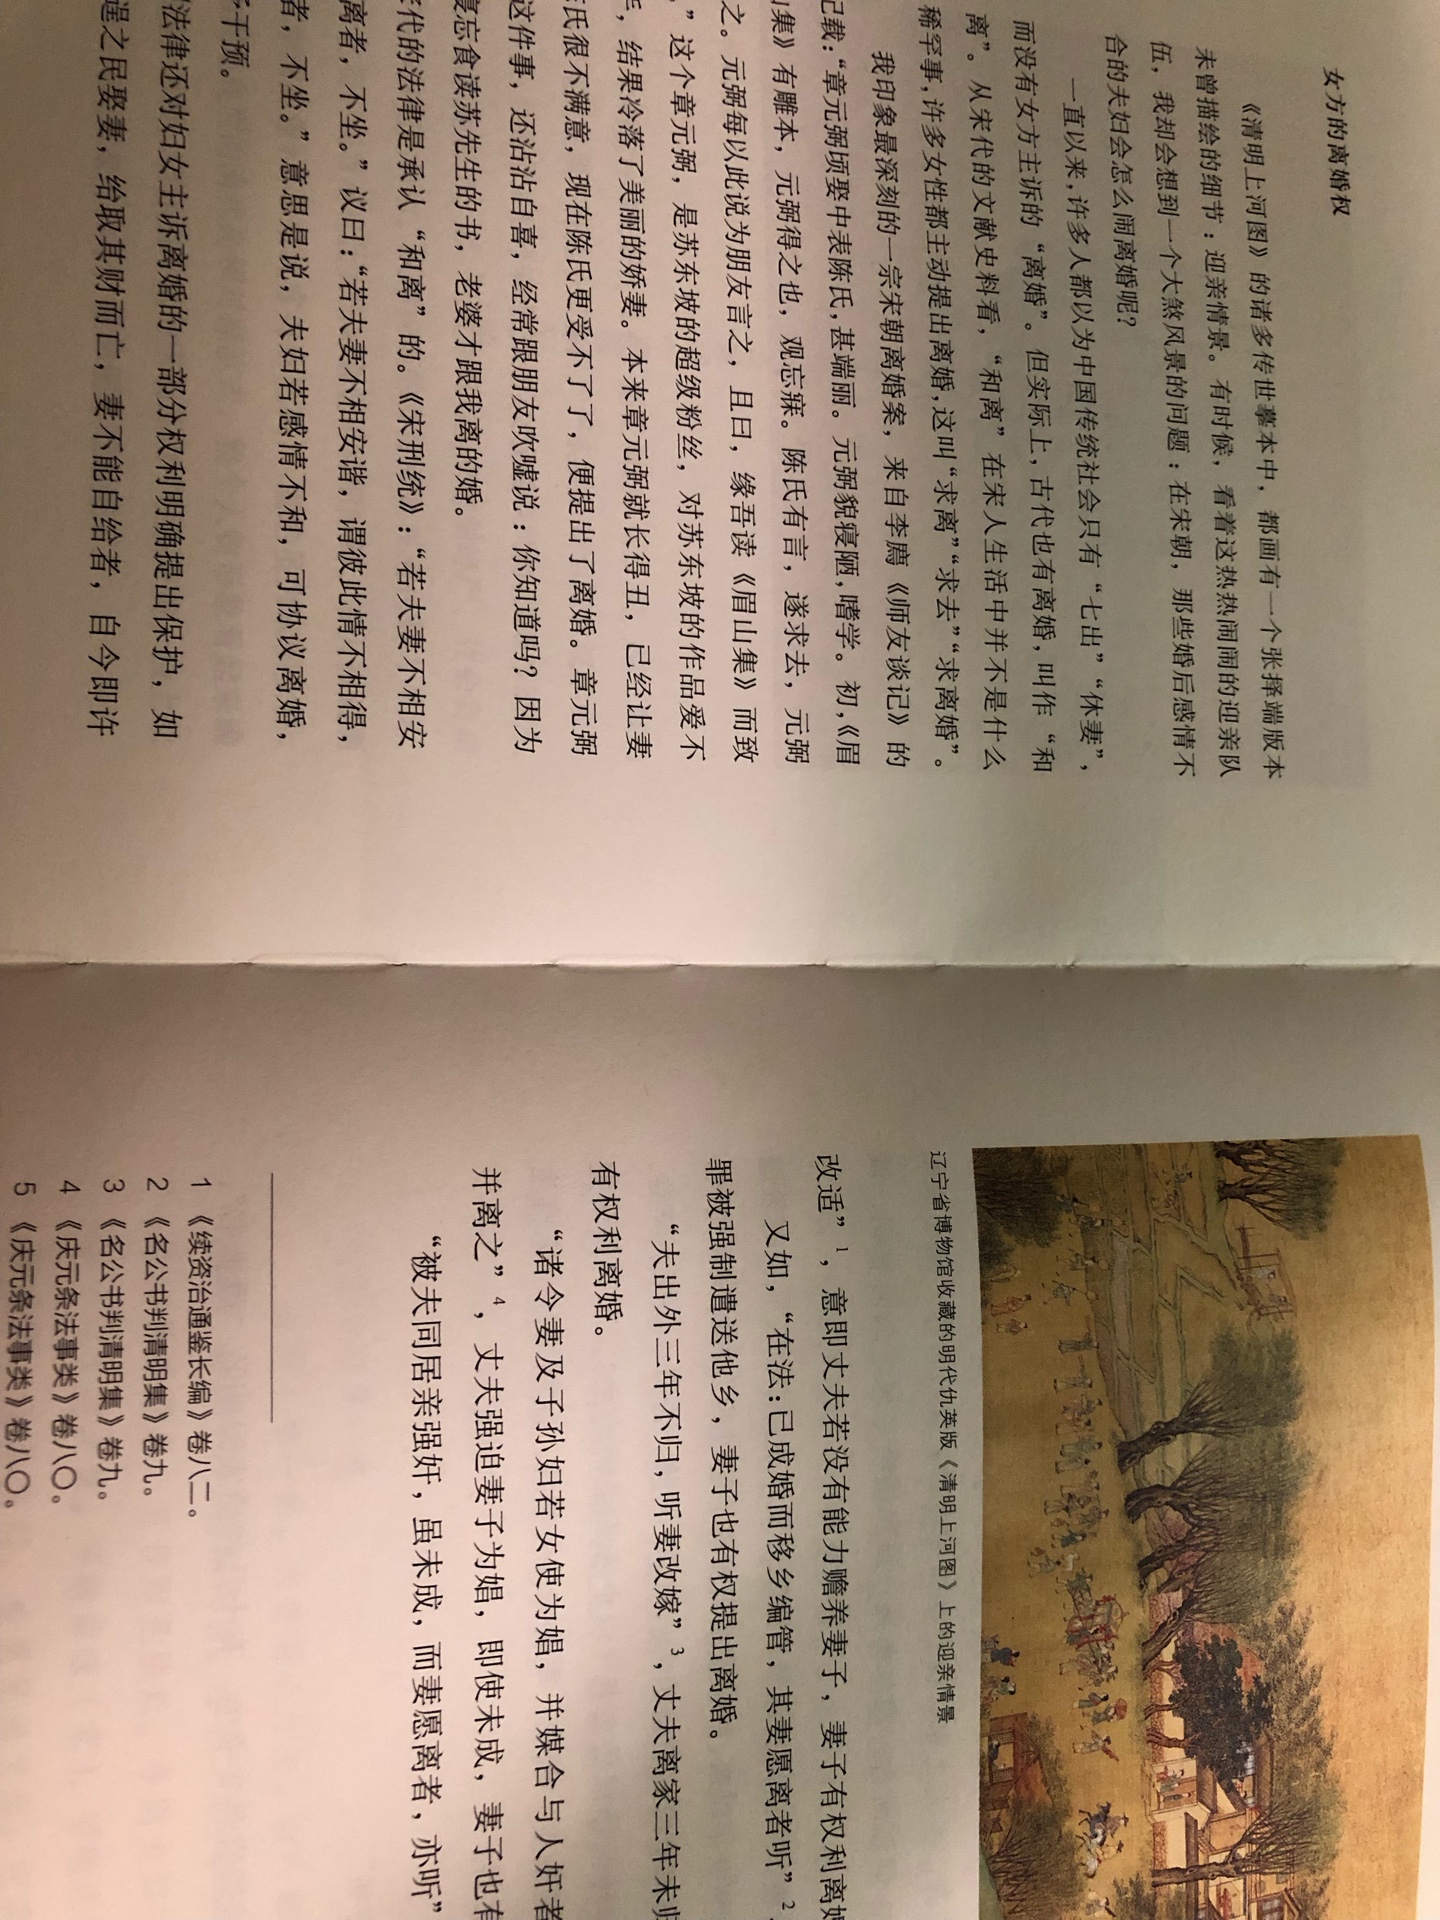 裸脊锁线 图文并茂 非常适合翻看的一册书 对了解宋朝文化很有用